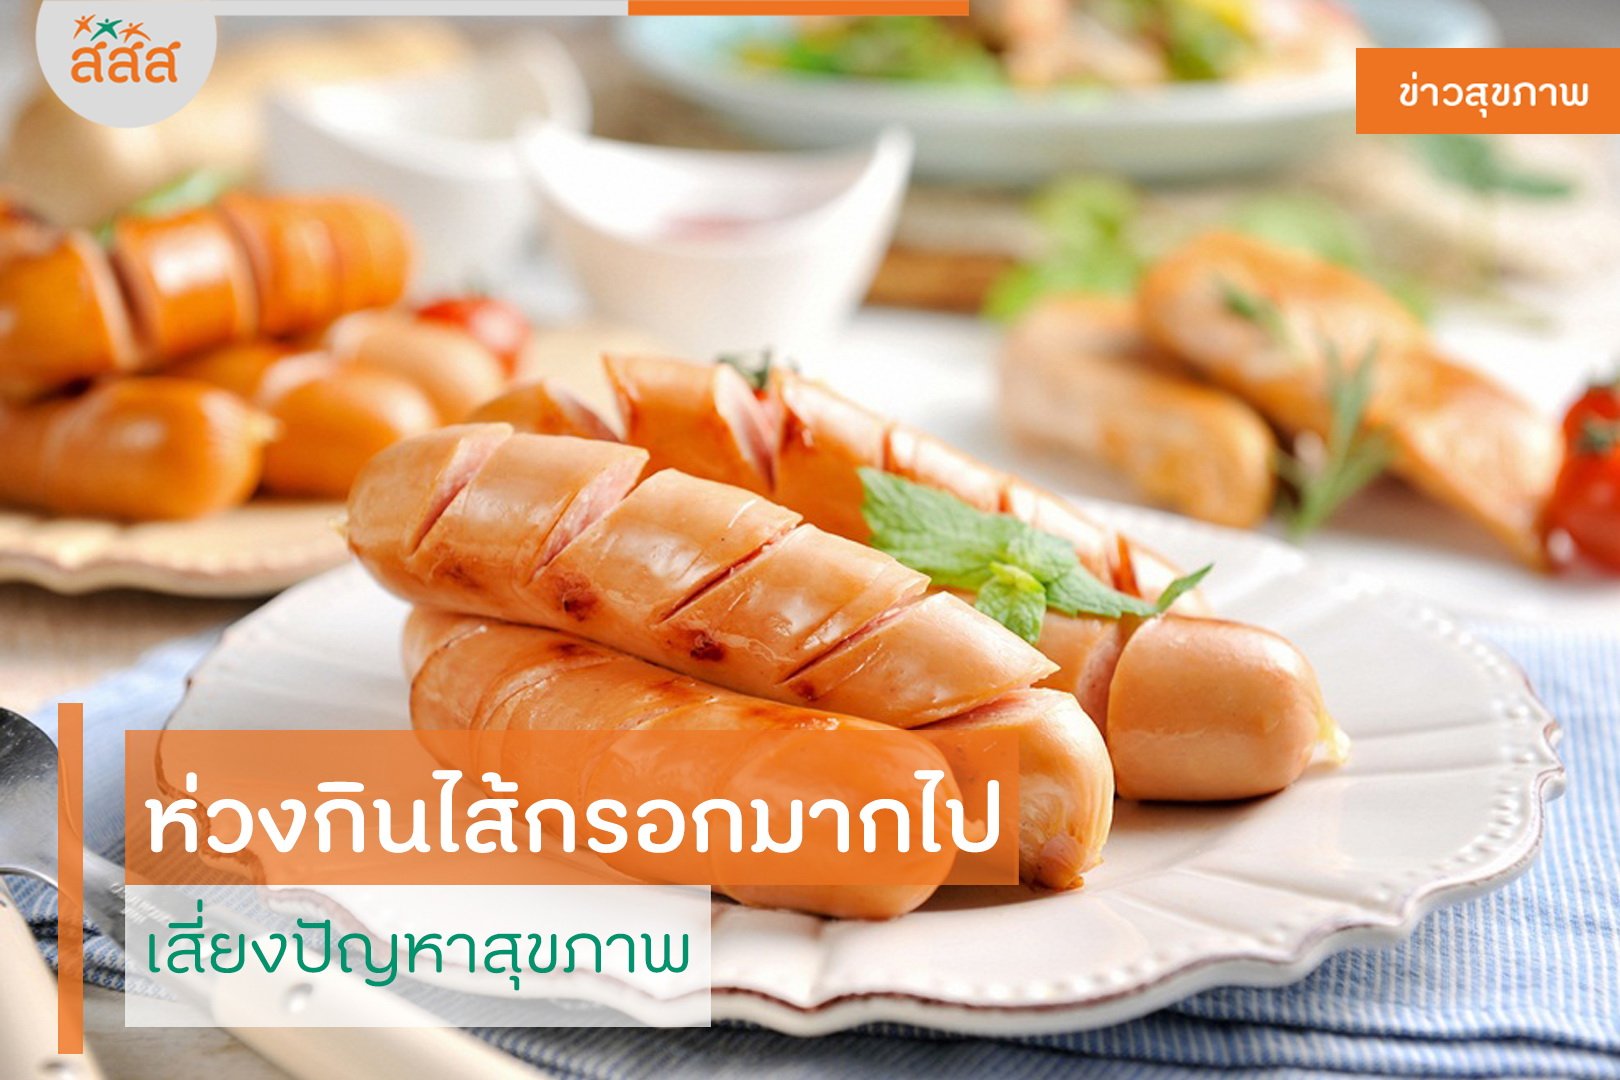 ห่วงกินไส้กรอกมากไป เสี่ยงปัญหาสุขภาพ thaihealth